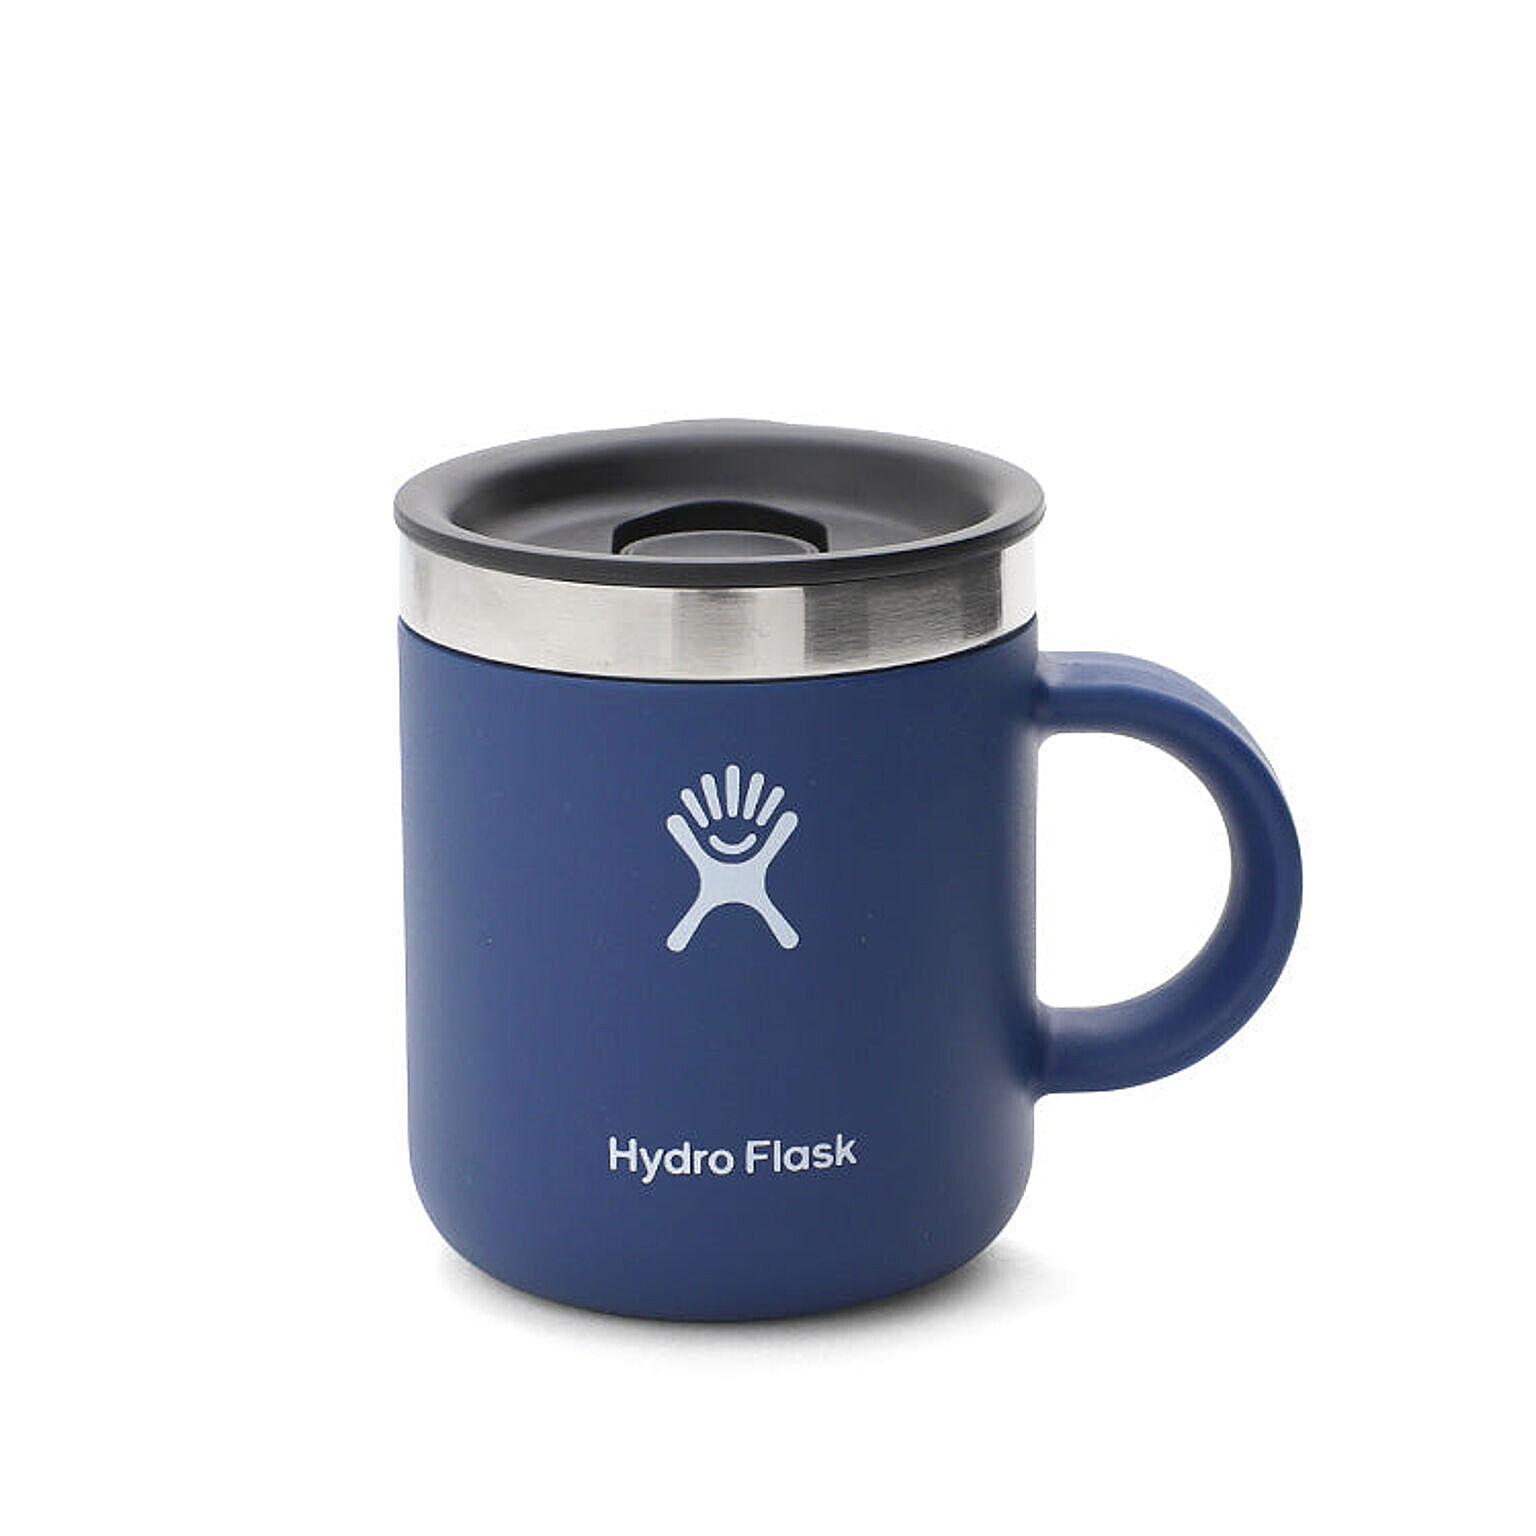 ハイドロフラスク クローザブル コーヒーマグ 6oz/177ml Hydro Flask Closeable Coffee Mug